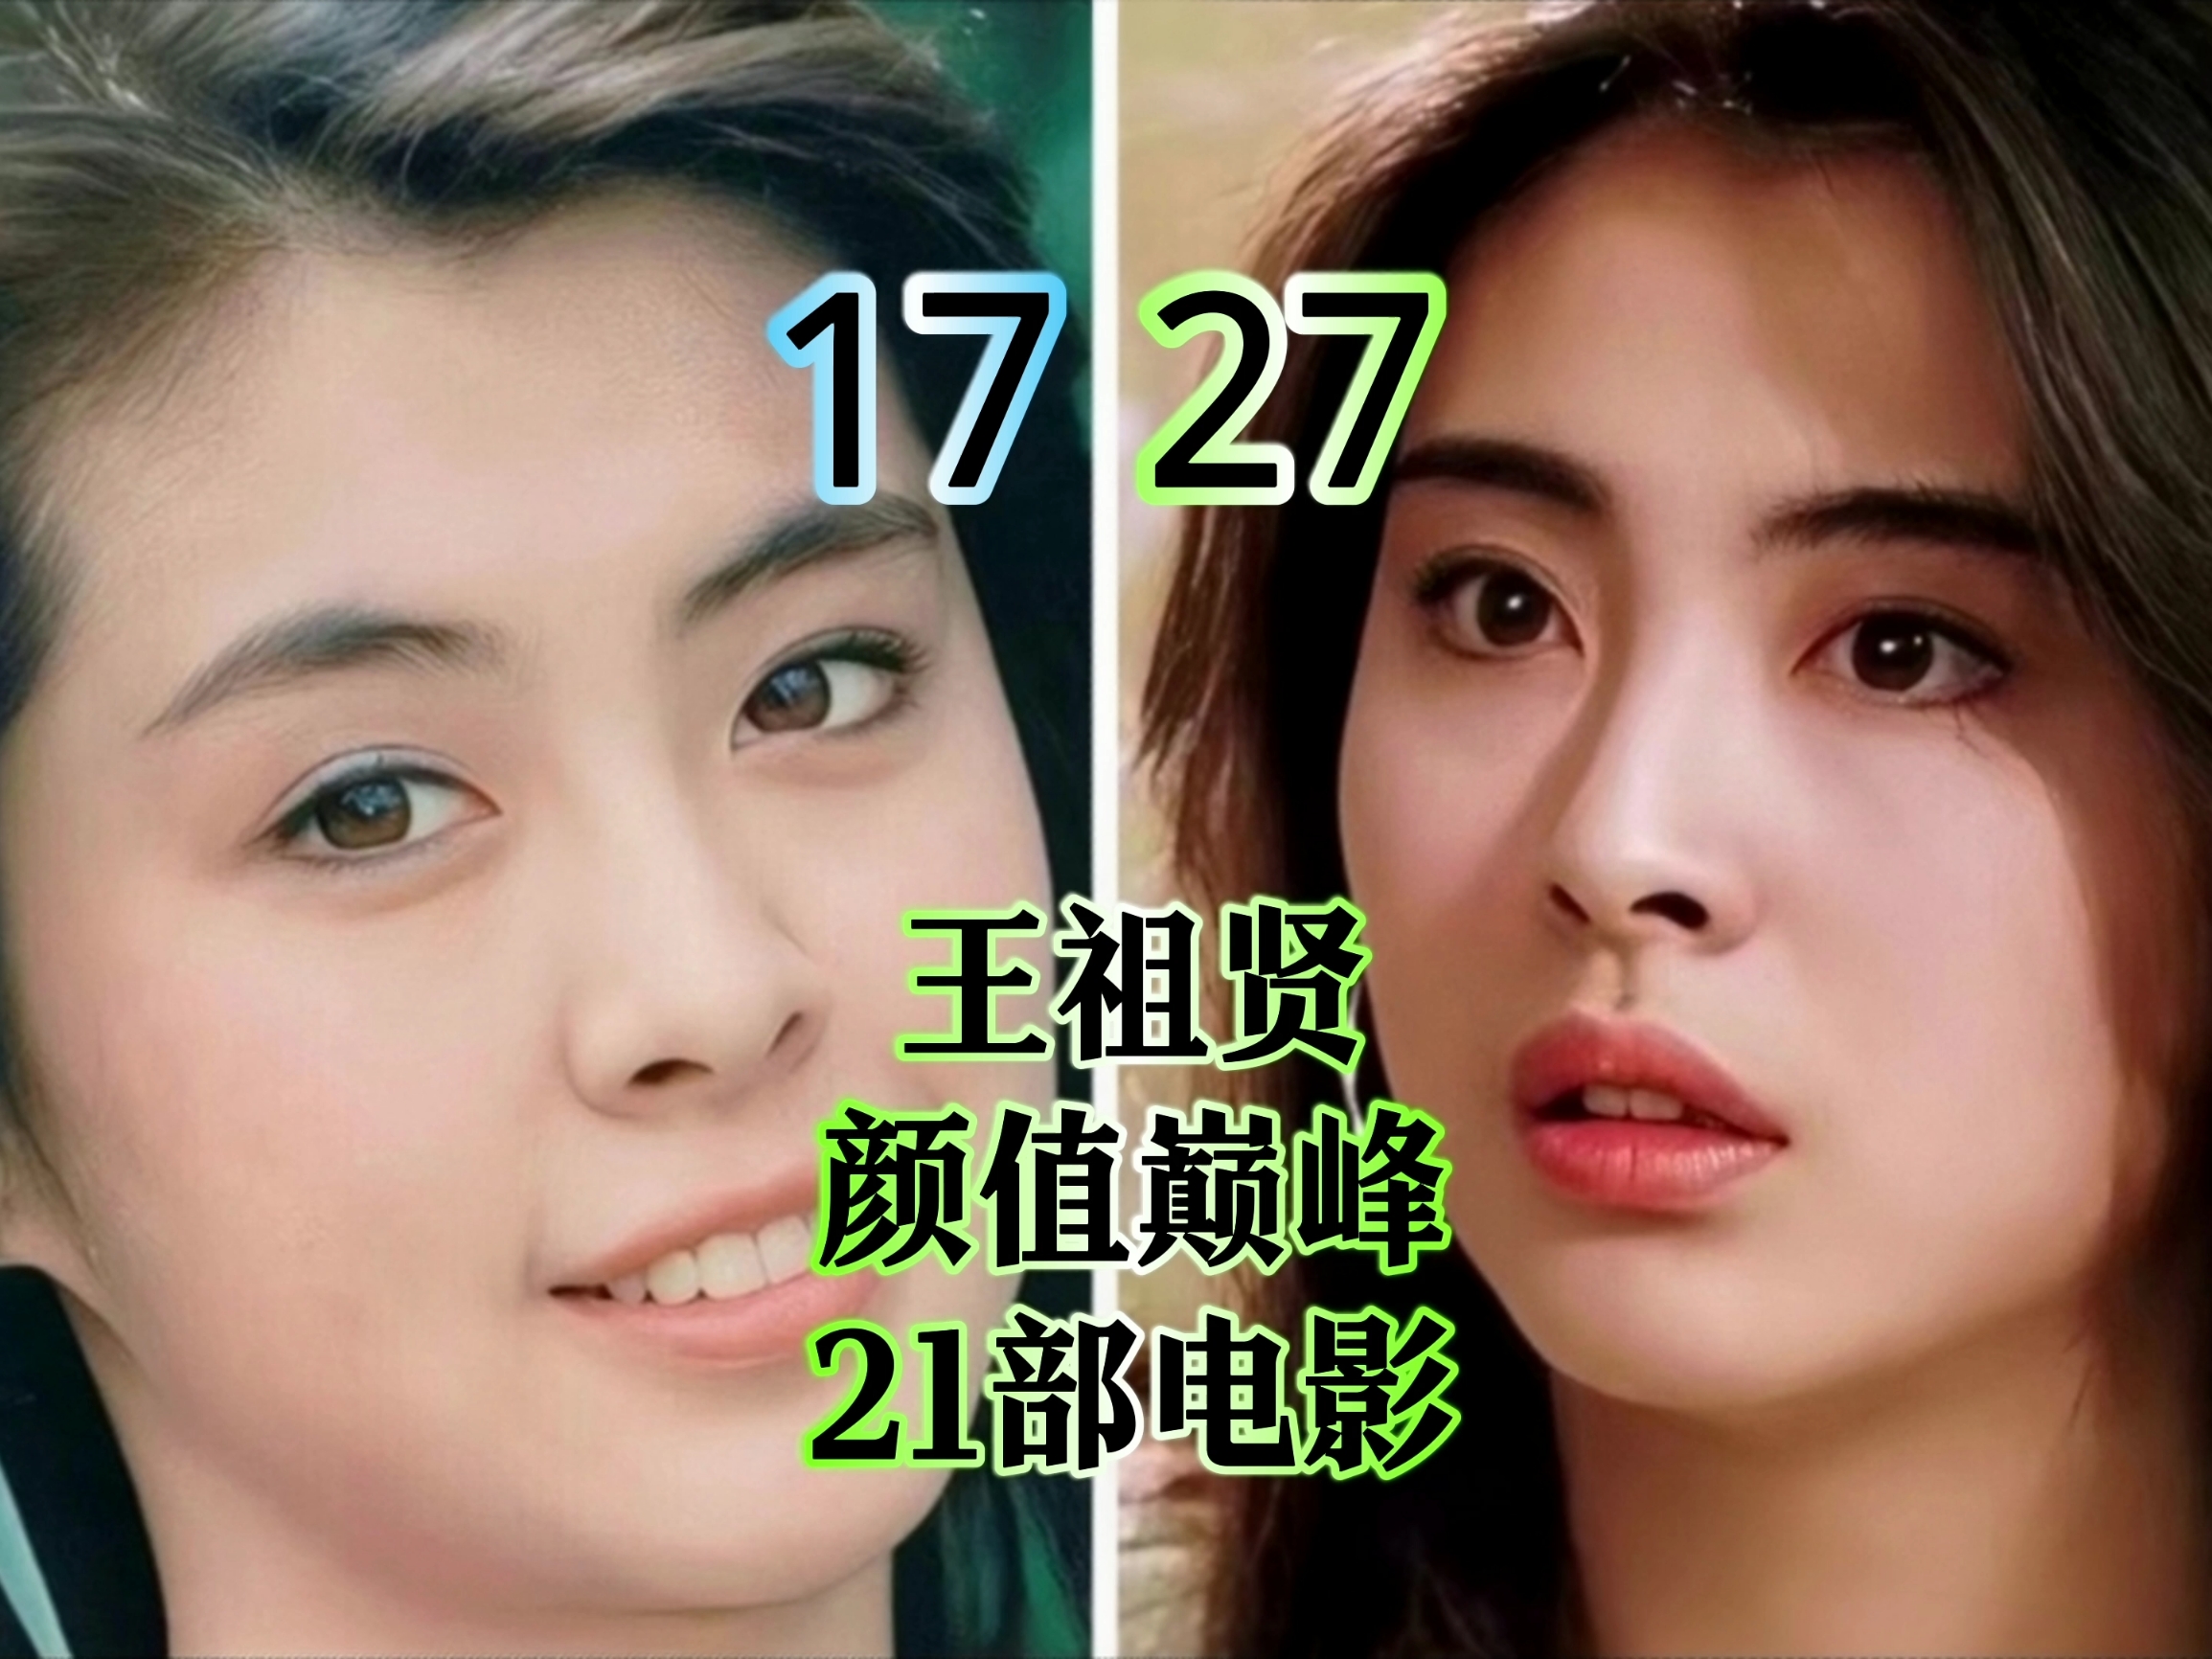 王祖贤17岁到27岁荧幕颜值变化，你是从哪部电影看到她的